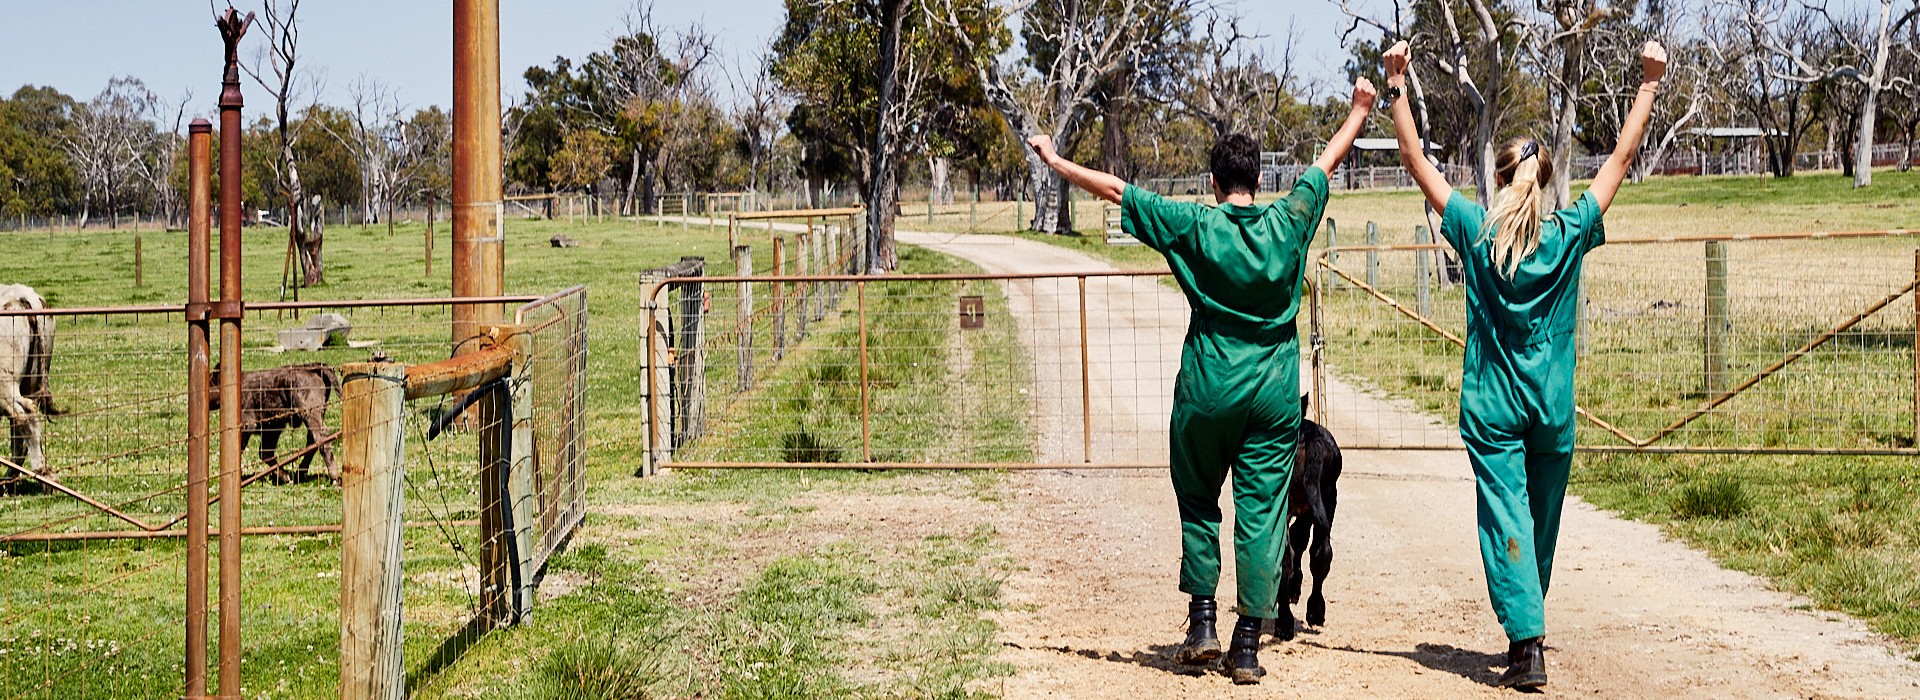 两个兽医学生走在一只小山羊后面，他们举起手臂表示胜利.